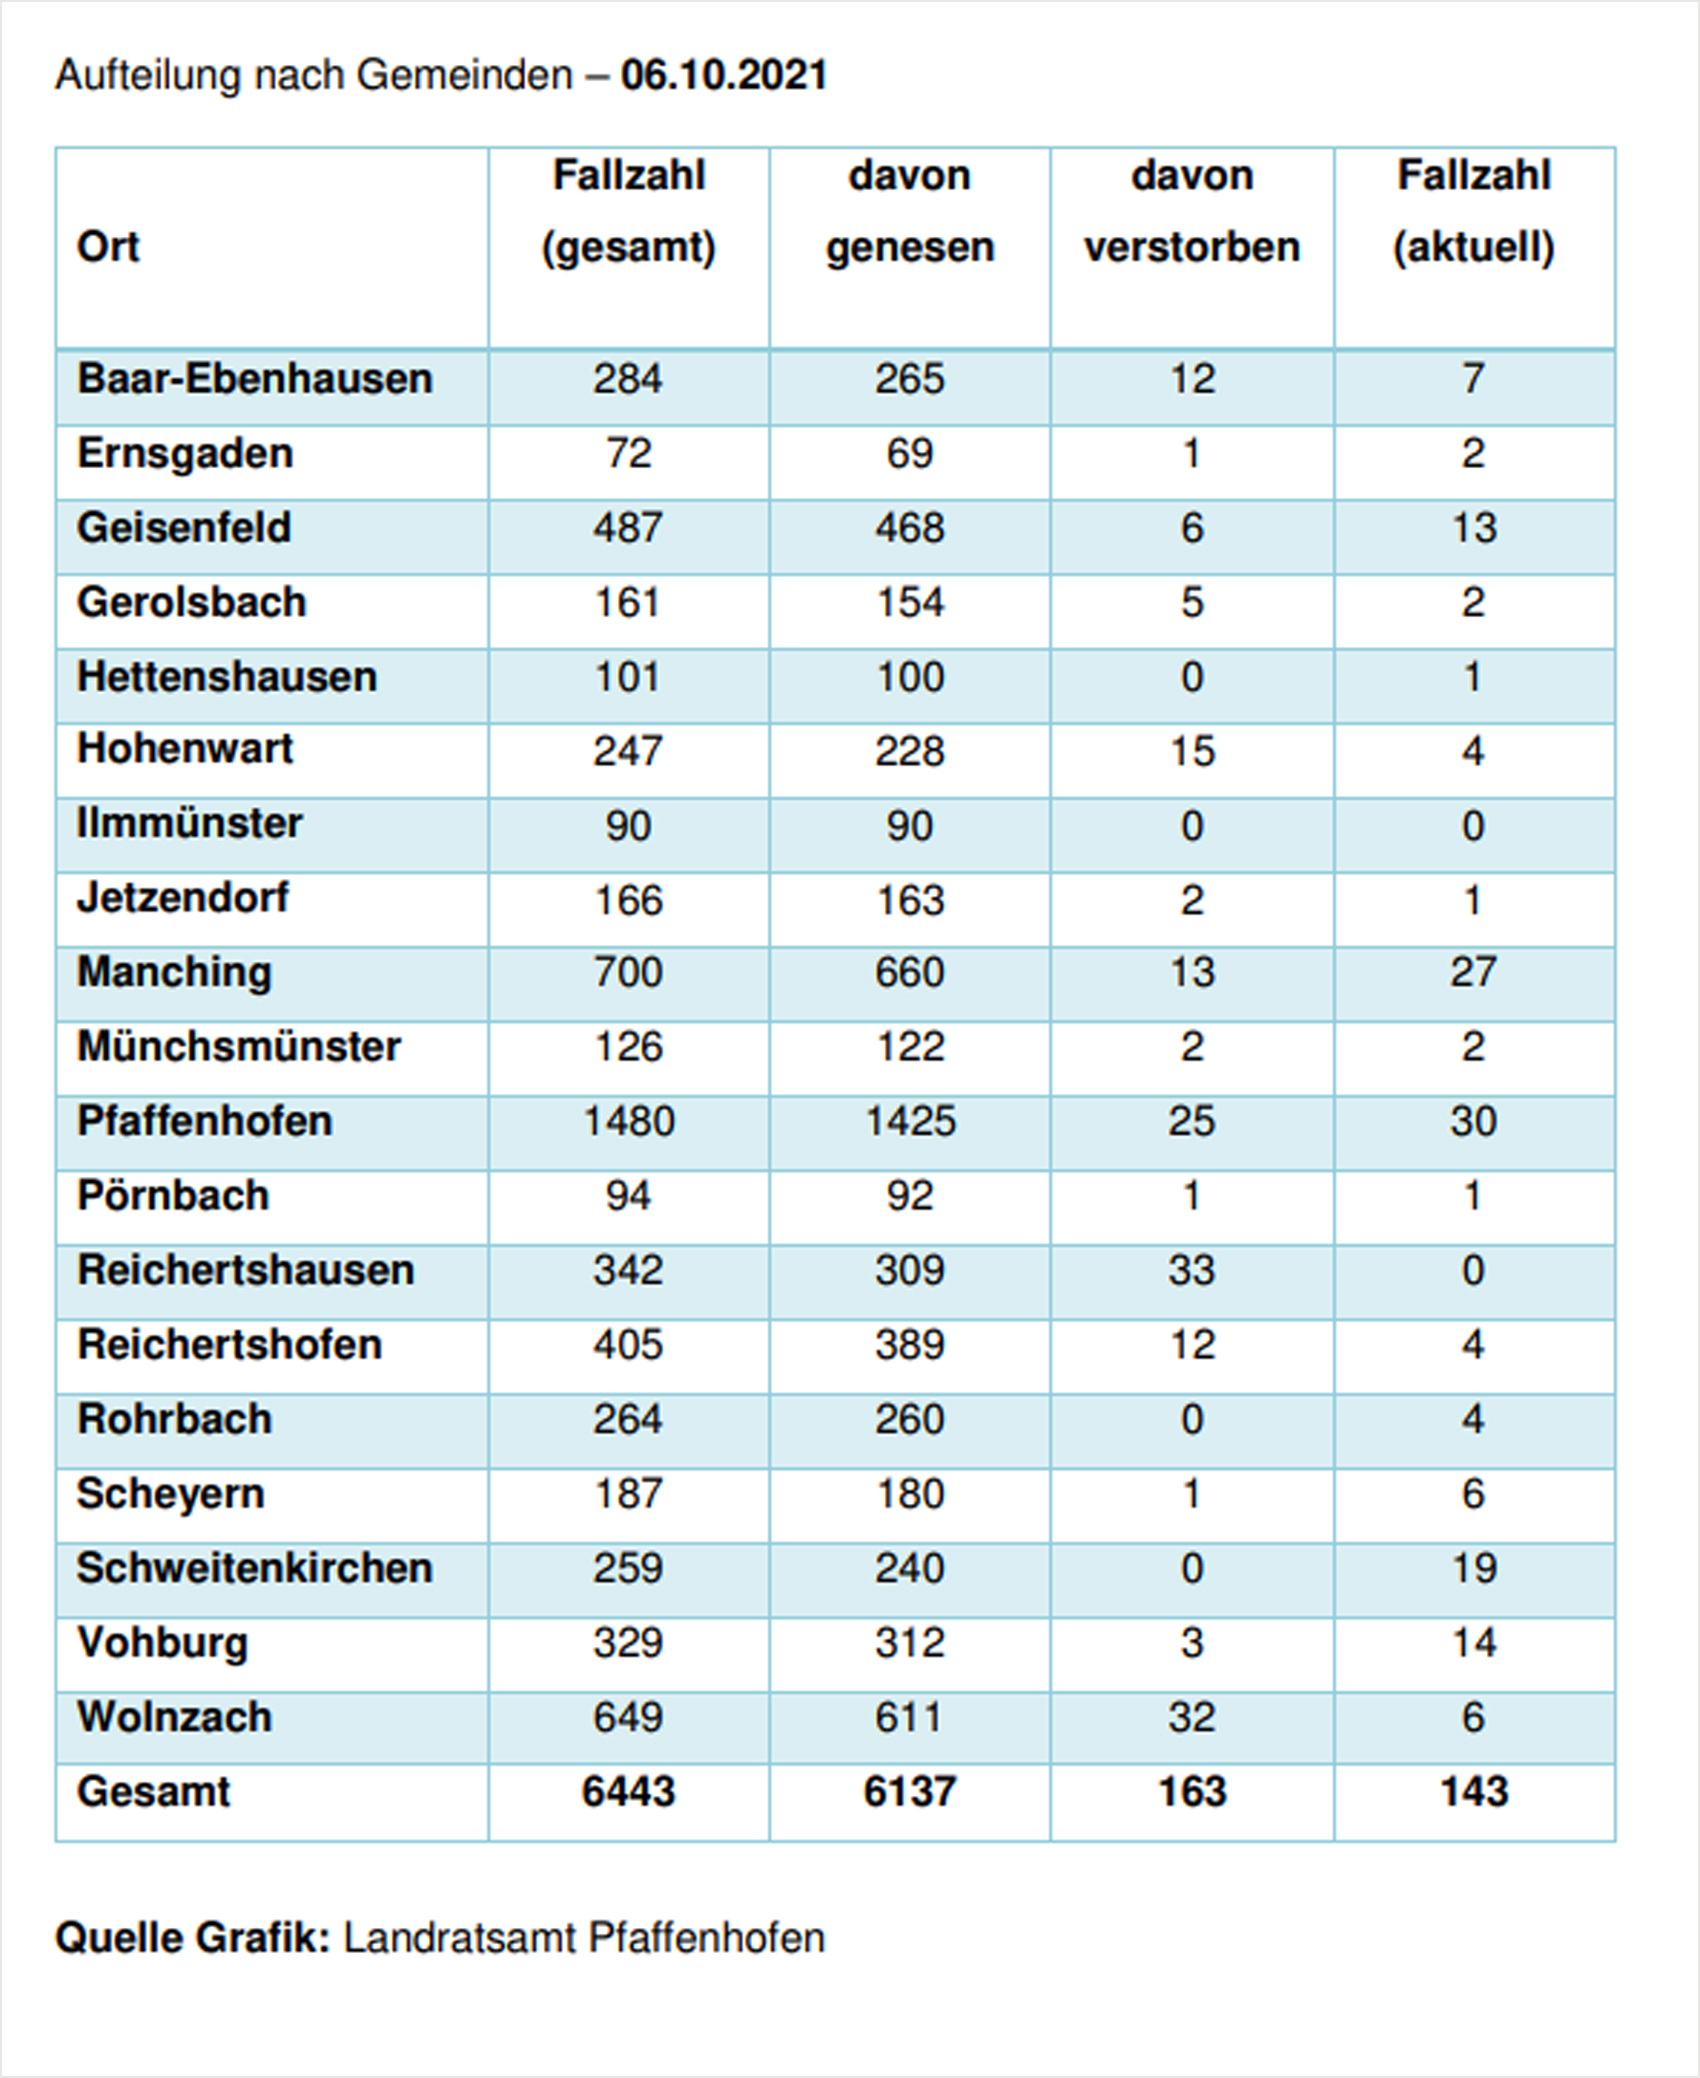 Verteilung der Fallzahlen auf die Landkreisgemeinden - 06.10.2021